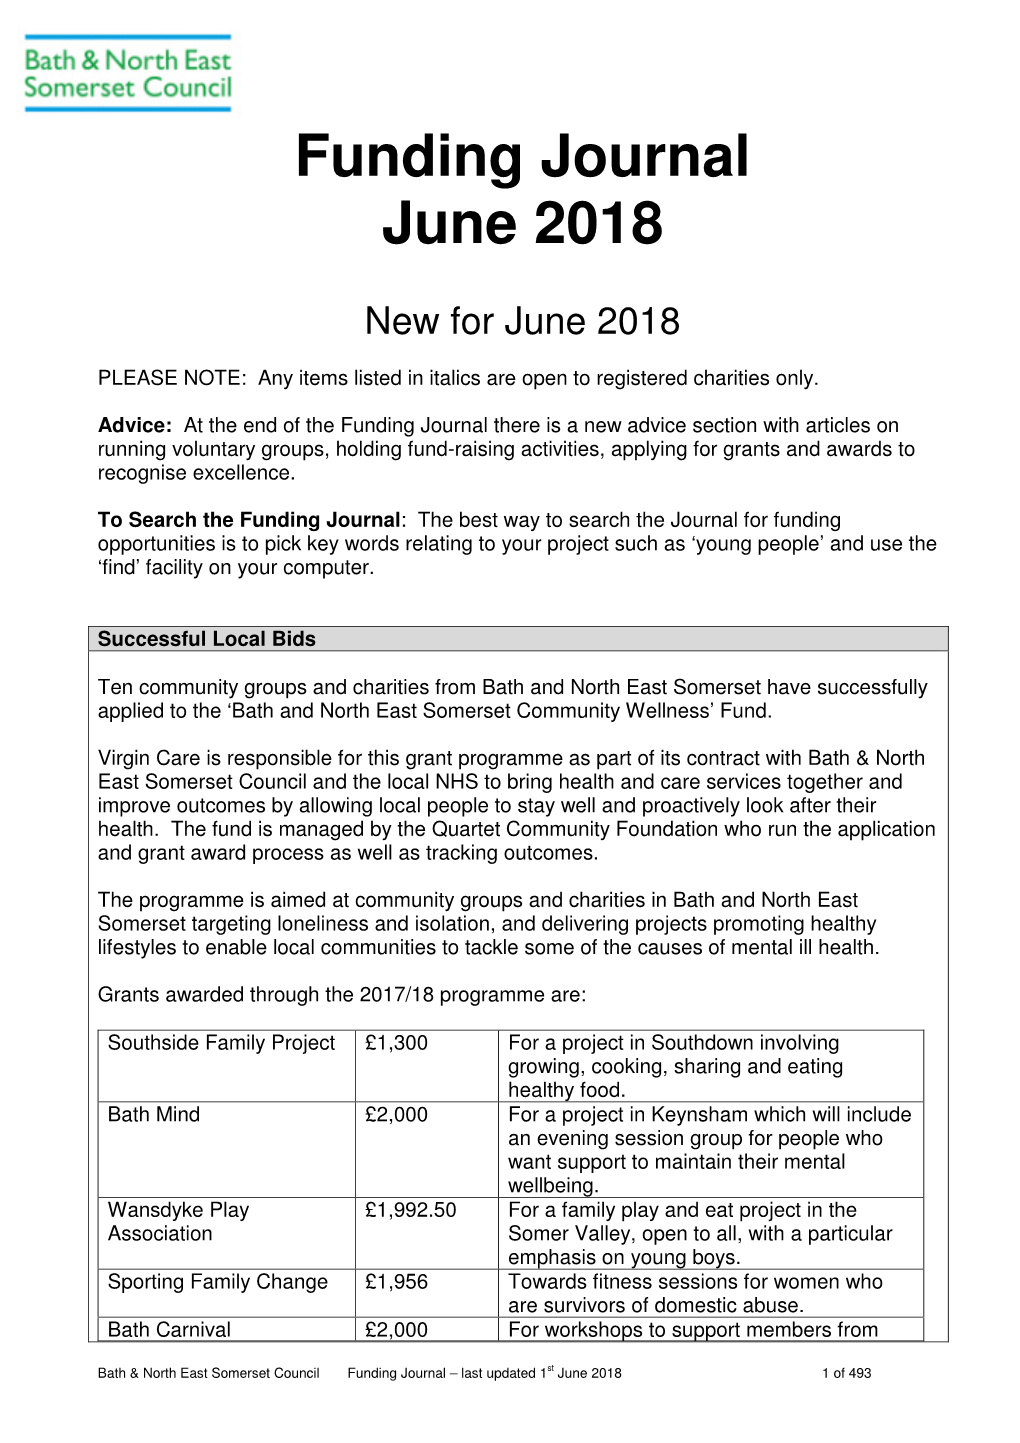 Funding Journal June 2018